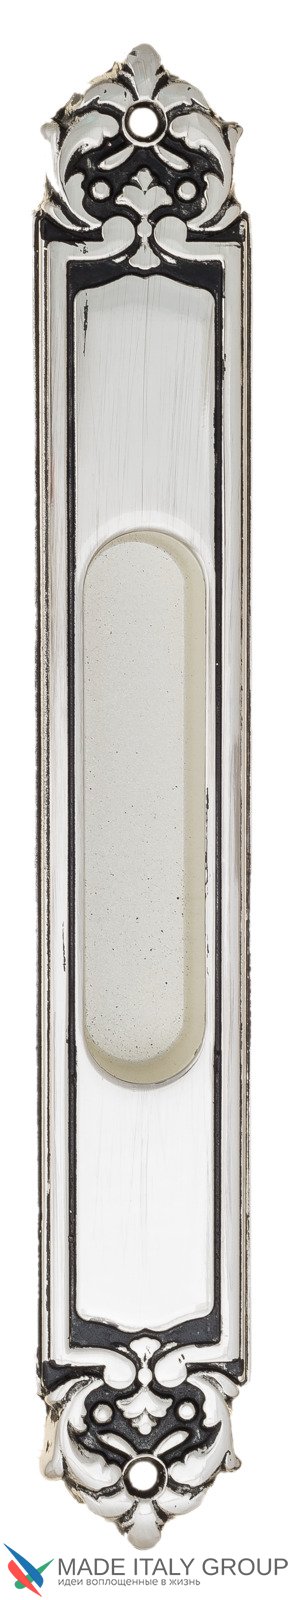 Ручка для раздвижной двери Venezia U122 DECOR LONG натуральное серебро + черный (1шт.)